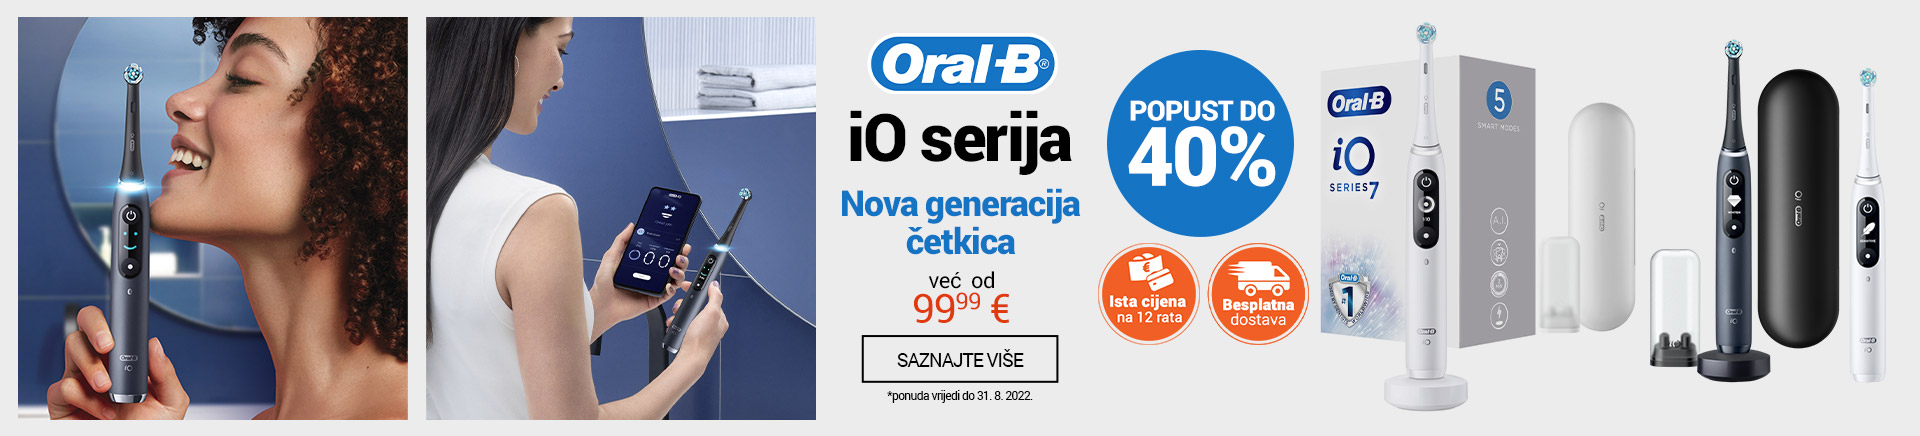 ME OralB iO serija Cetkice DESKTOP 1200 X 436.jpg